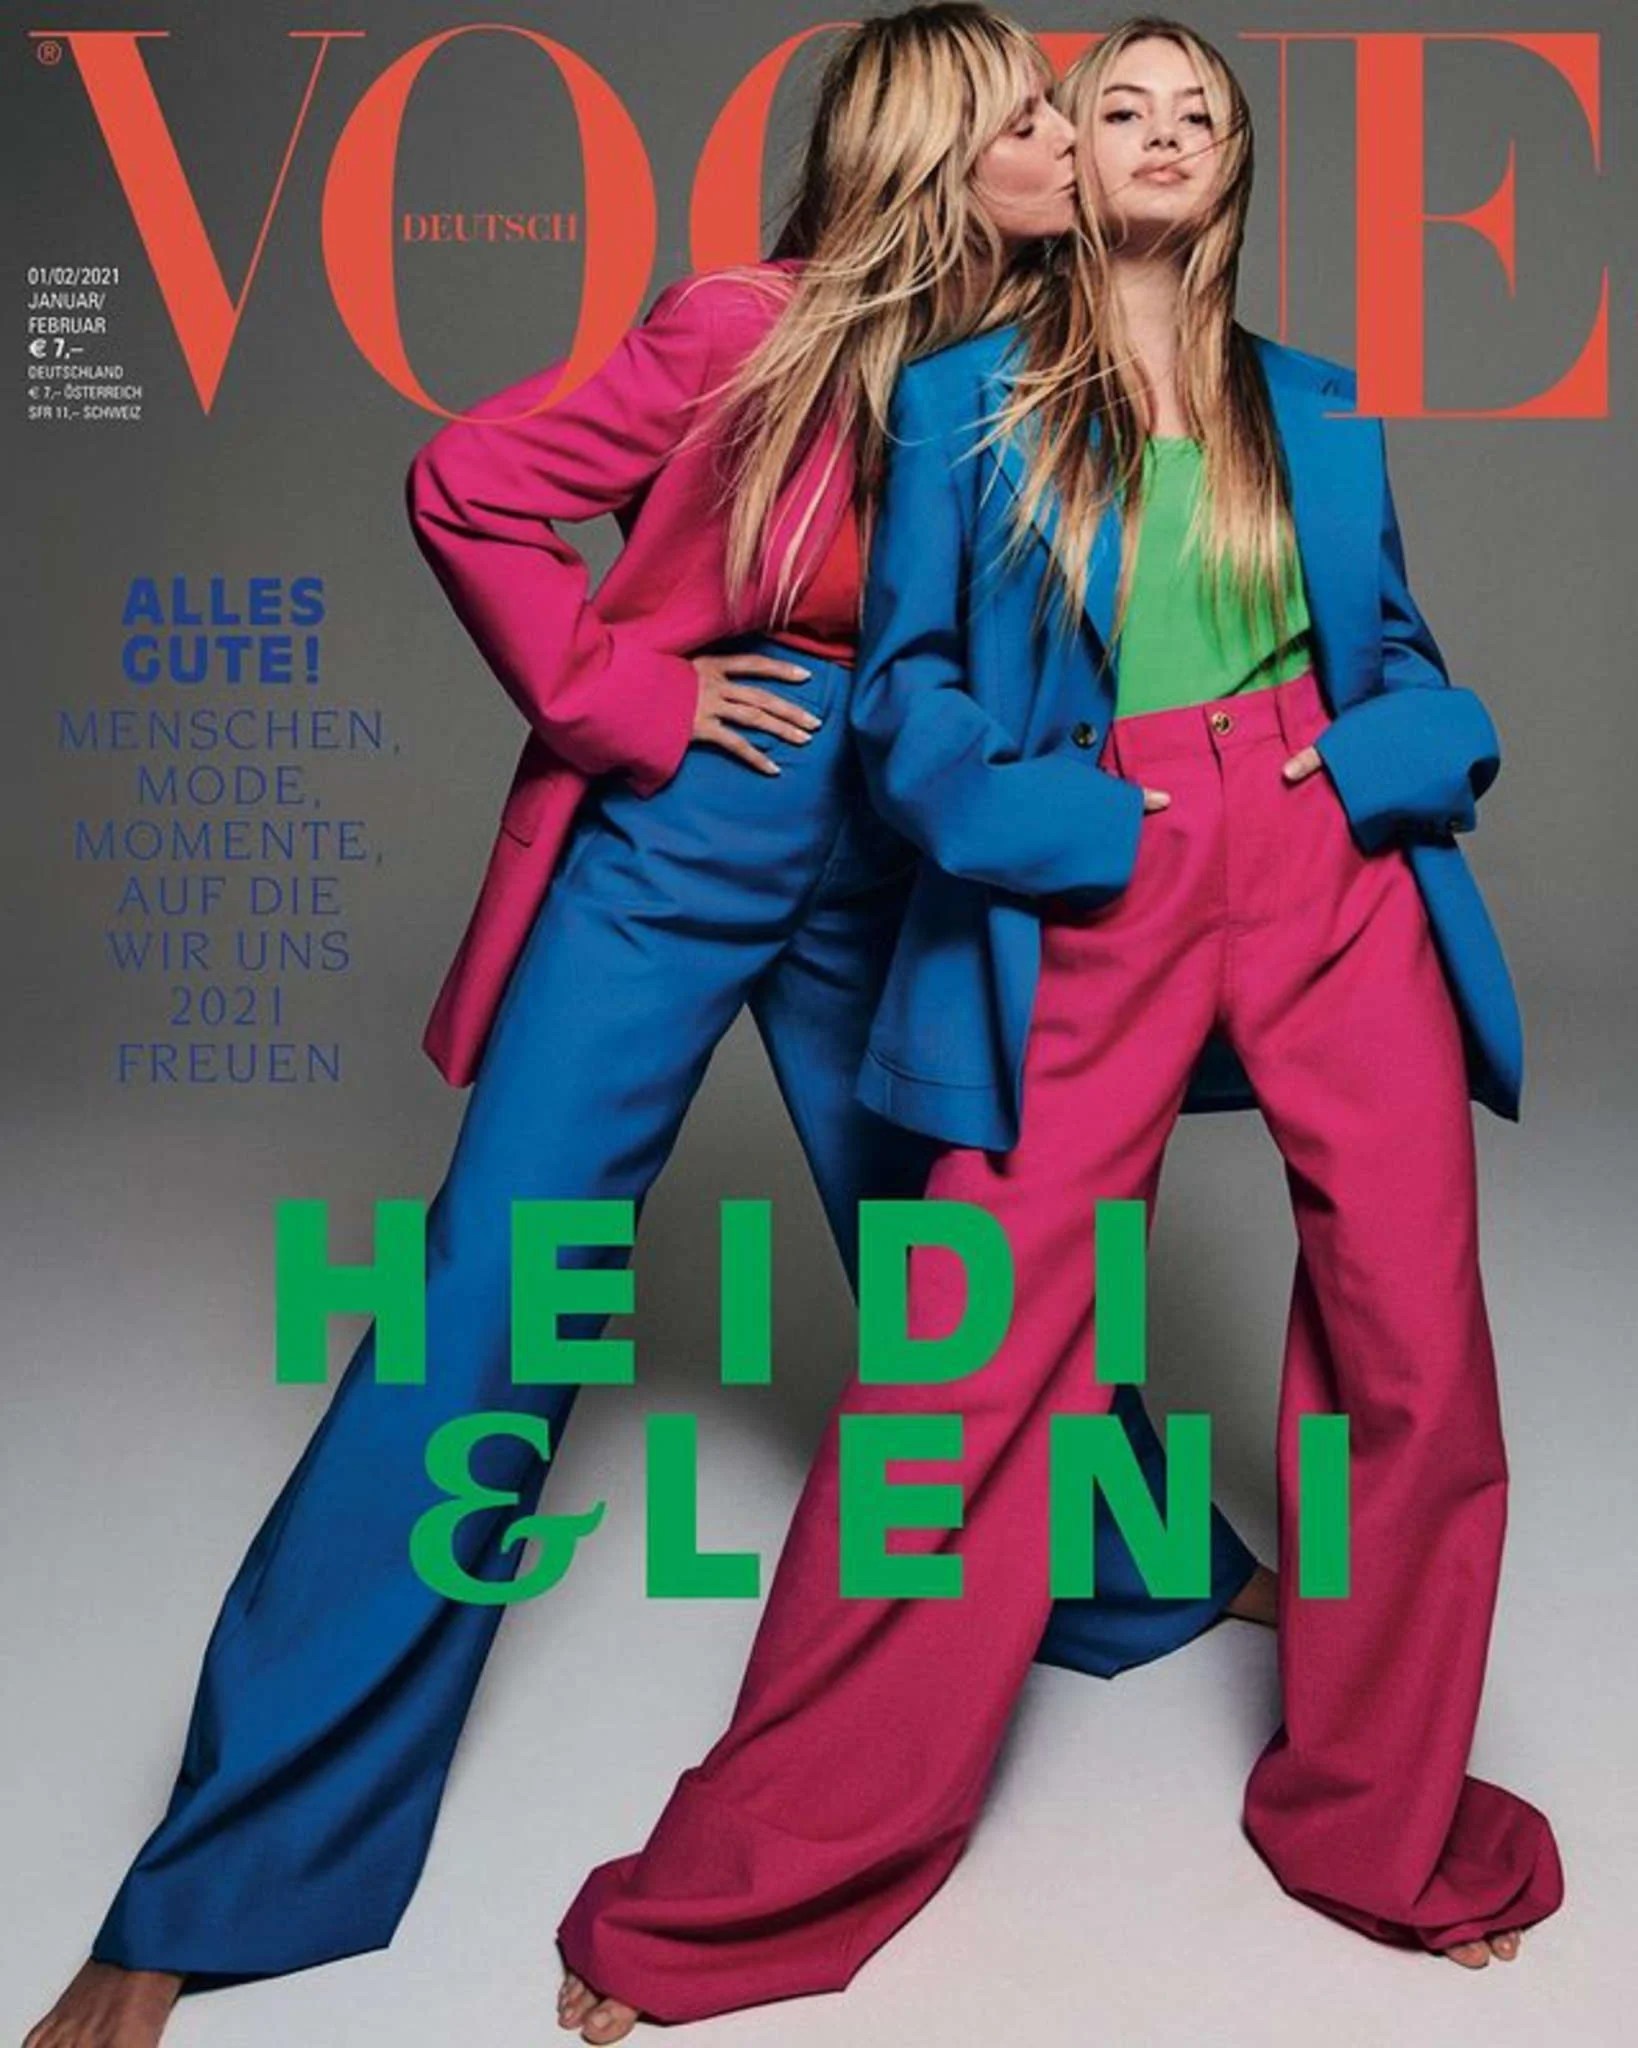 Ai ngờ đến lúc siêu mẫu hàng đầu thế giới Heidi Klum bị ái nữ 17 tuổi chặt đẹp chỉ bằng 1 bức ảnh, đẹp thế này bảo sao! - Ảnh 4.